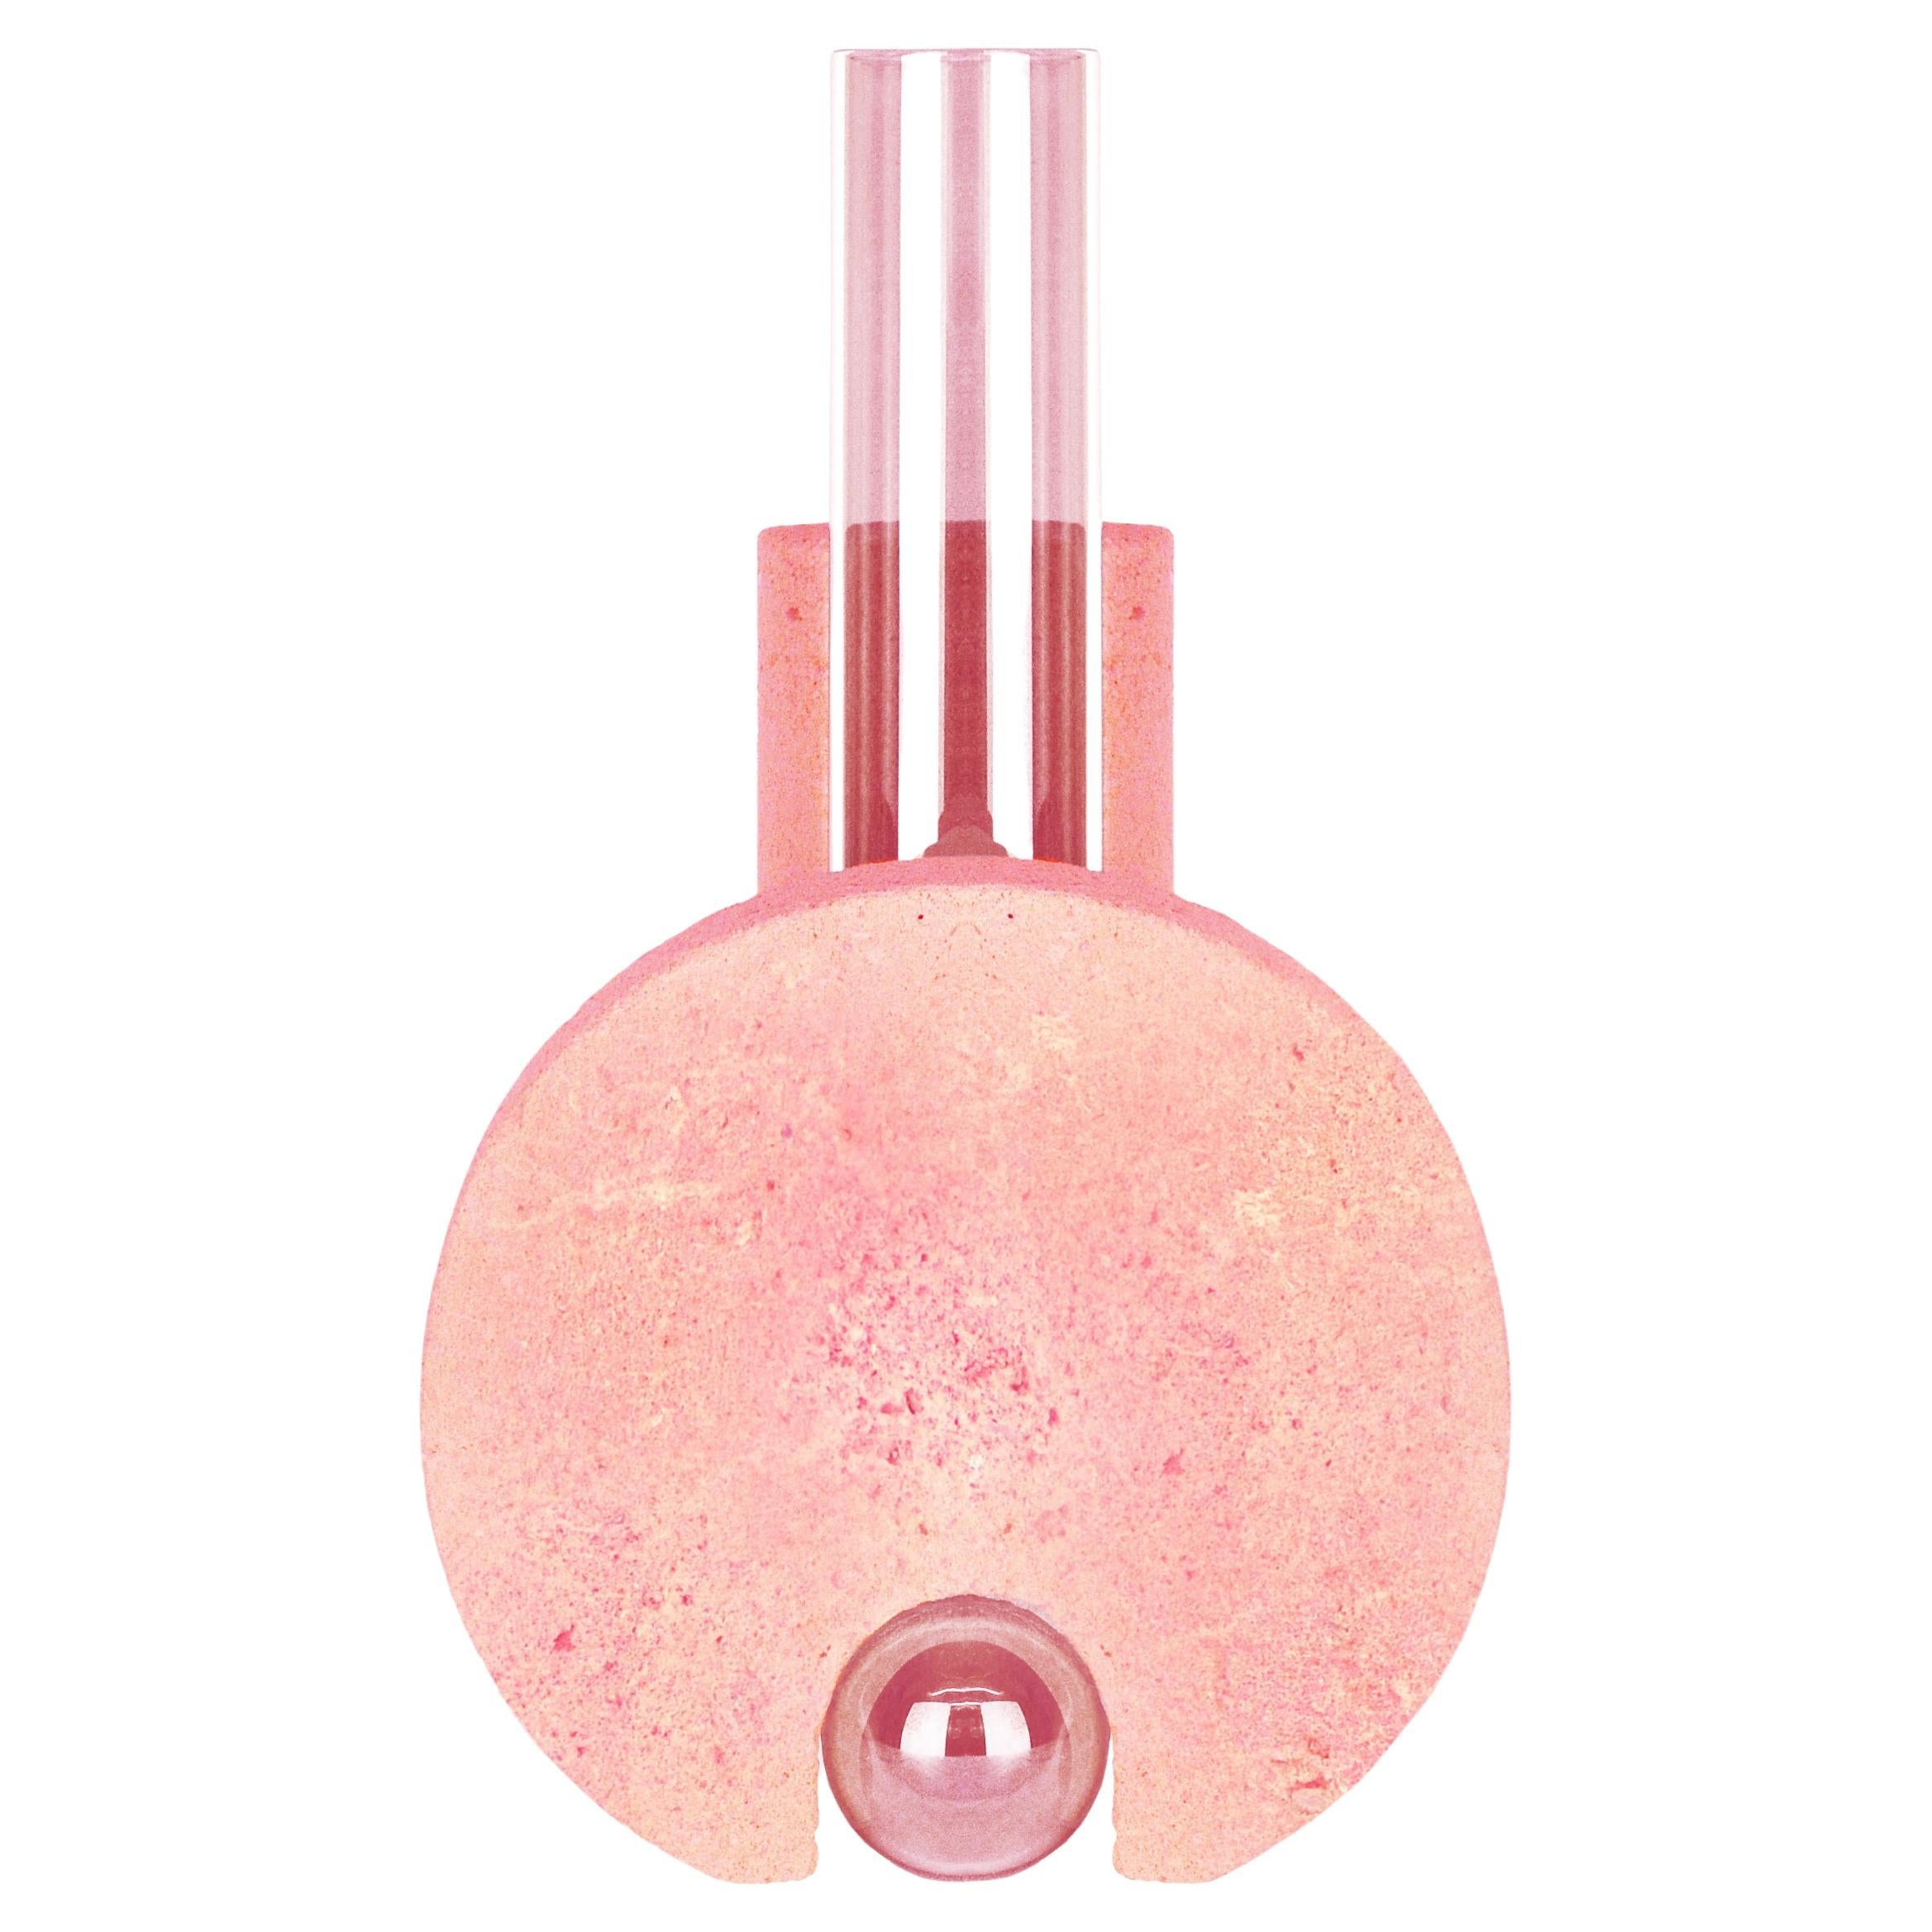 Pink-Pink Cochlea Della Metamorfosi 2 Soils Edition Vase by Coki Barbieri